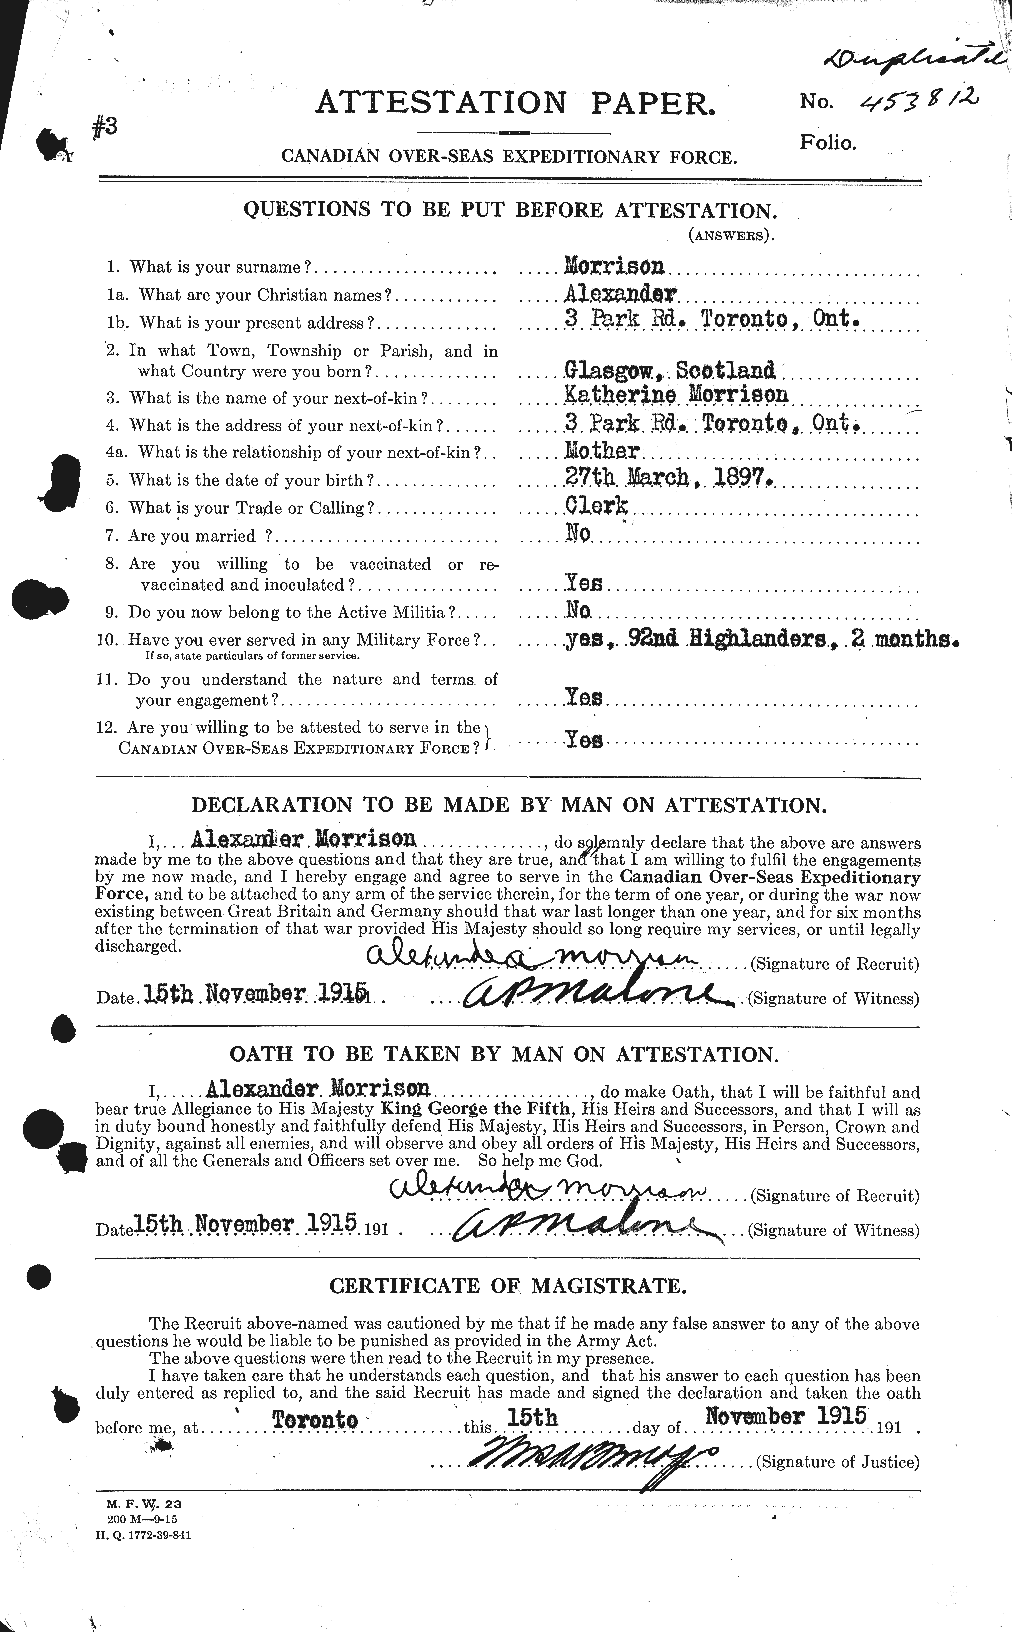 Dossiers du Personnel de la Première Guerre mondiale - CEC 510994a